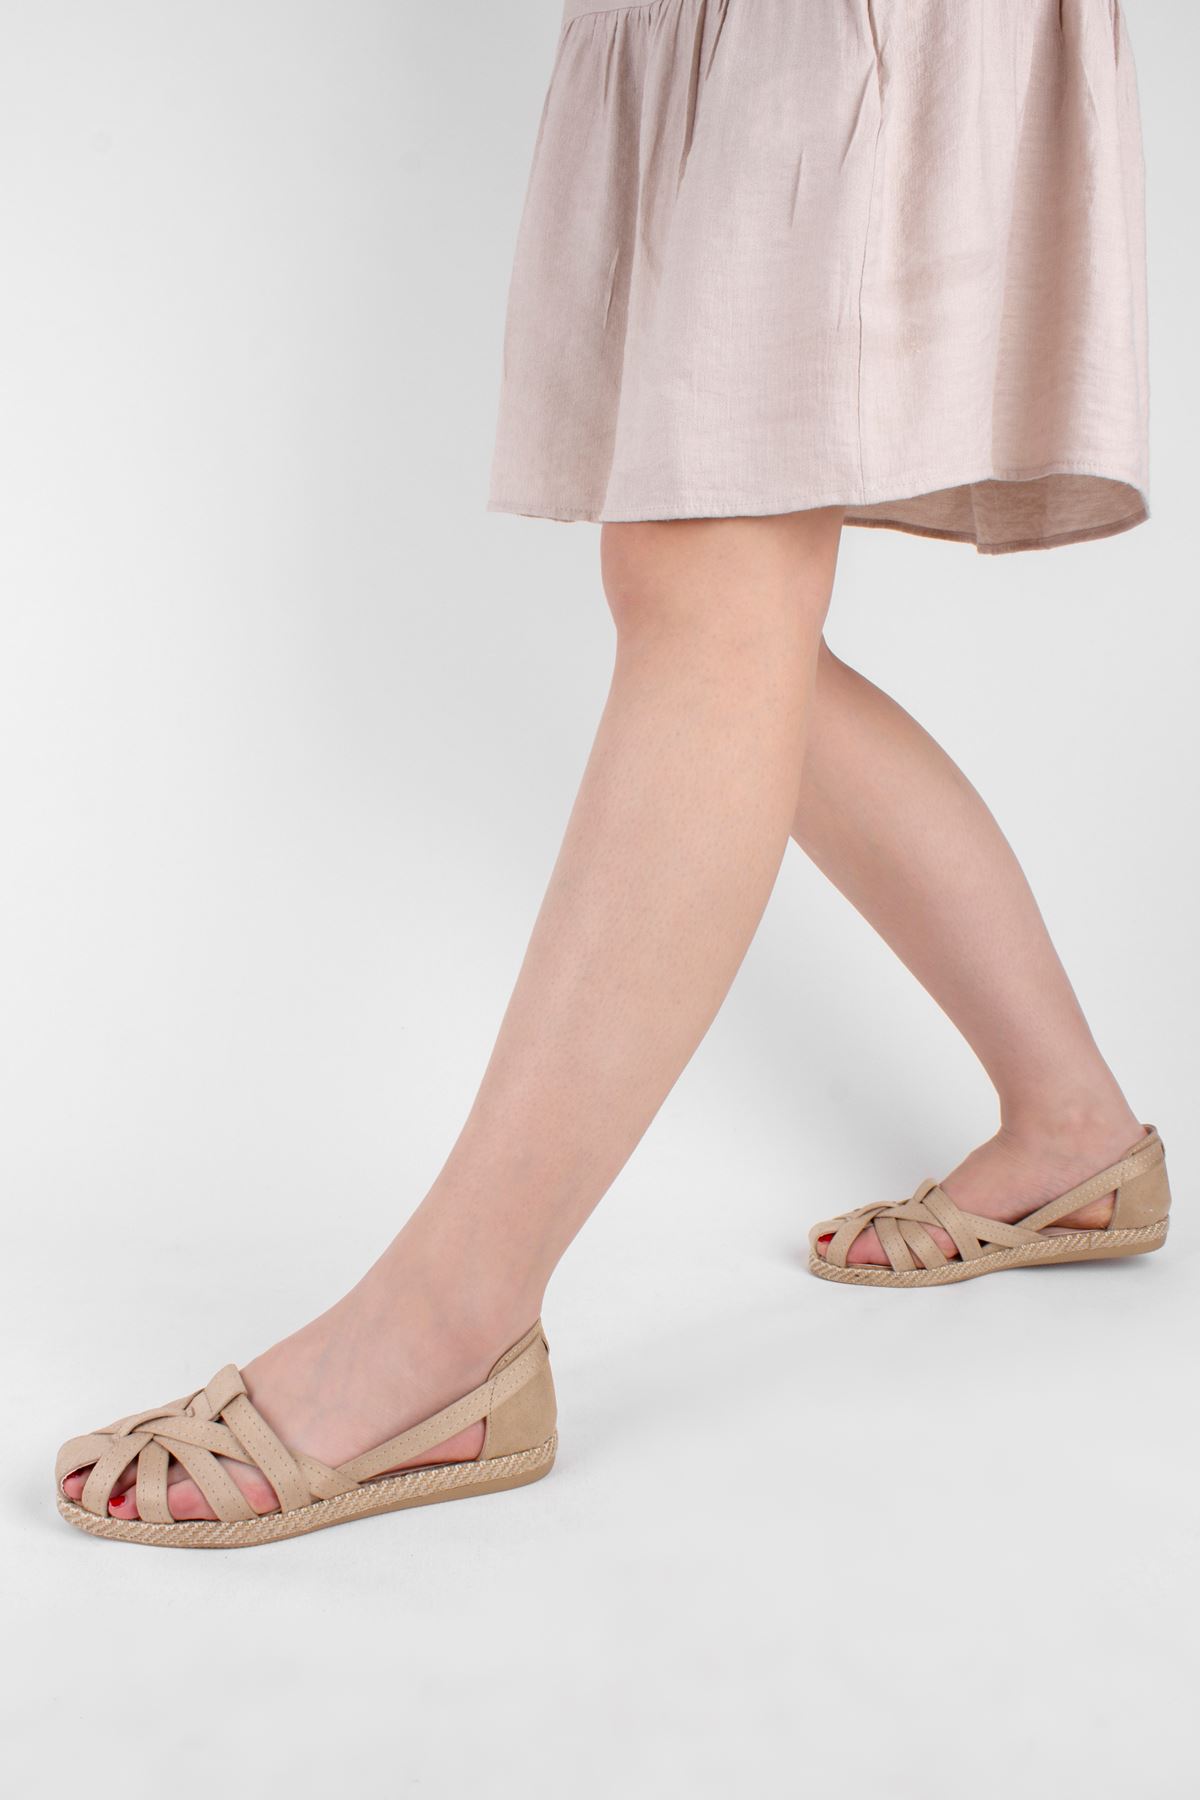 Avril Kadın Sandalet Kemer Detaylı-Krem